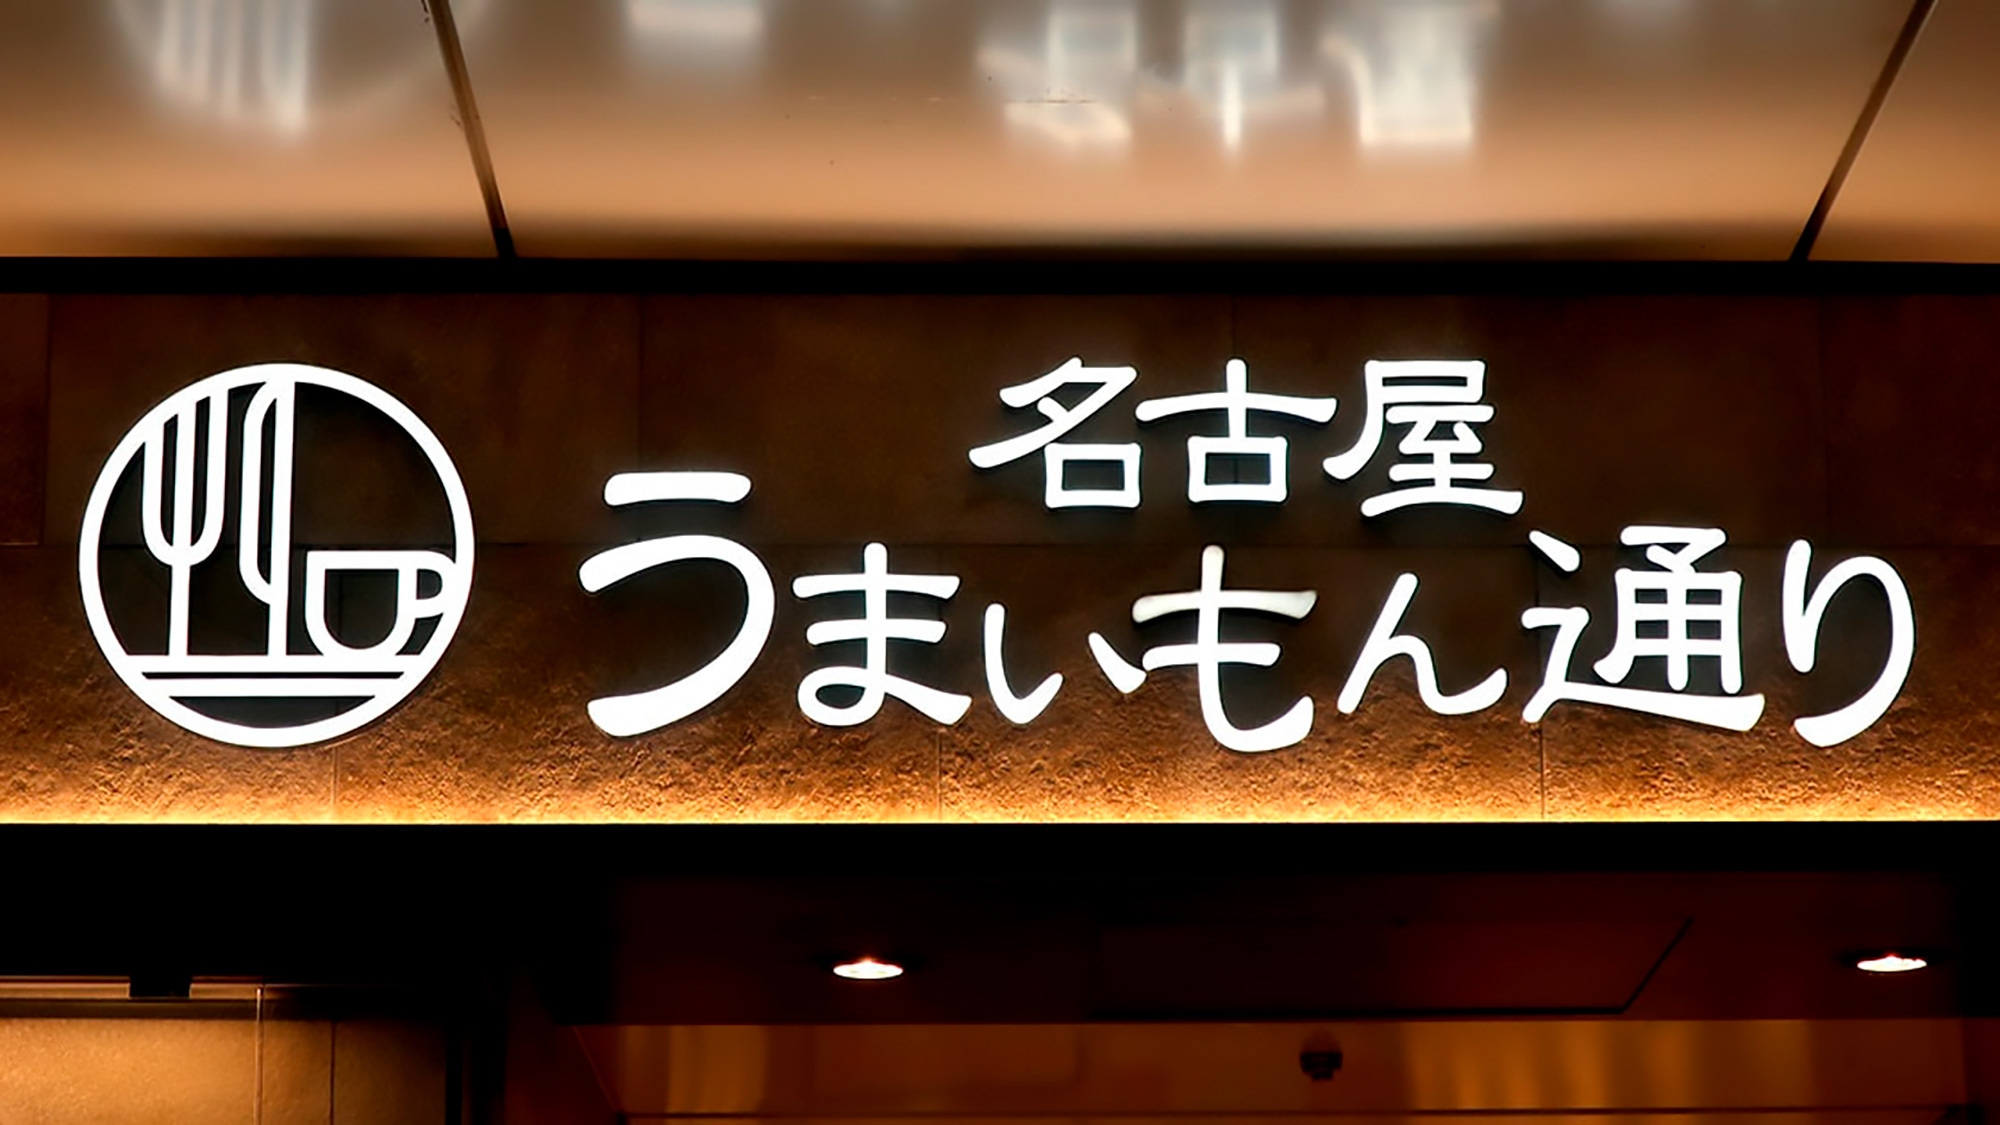 【お食事付】JR名古屋駅うまいもん通りと麺通りご利用2000円プラン◆朝食ビュッフェが無料◆